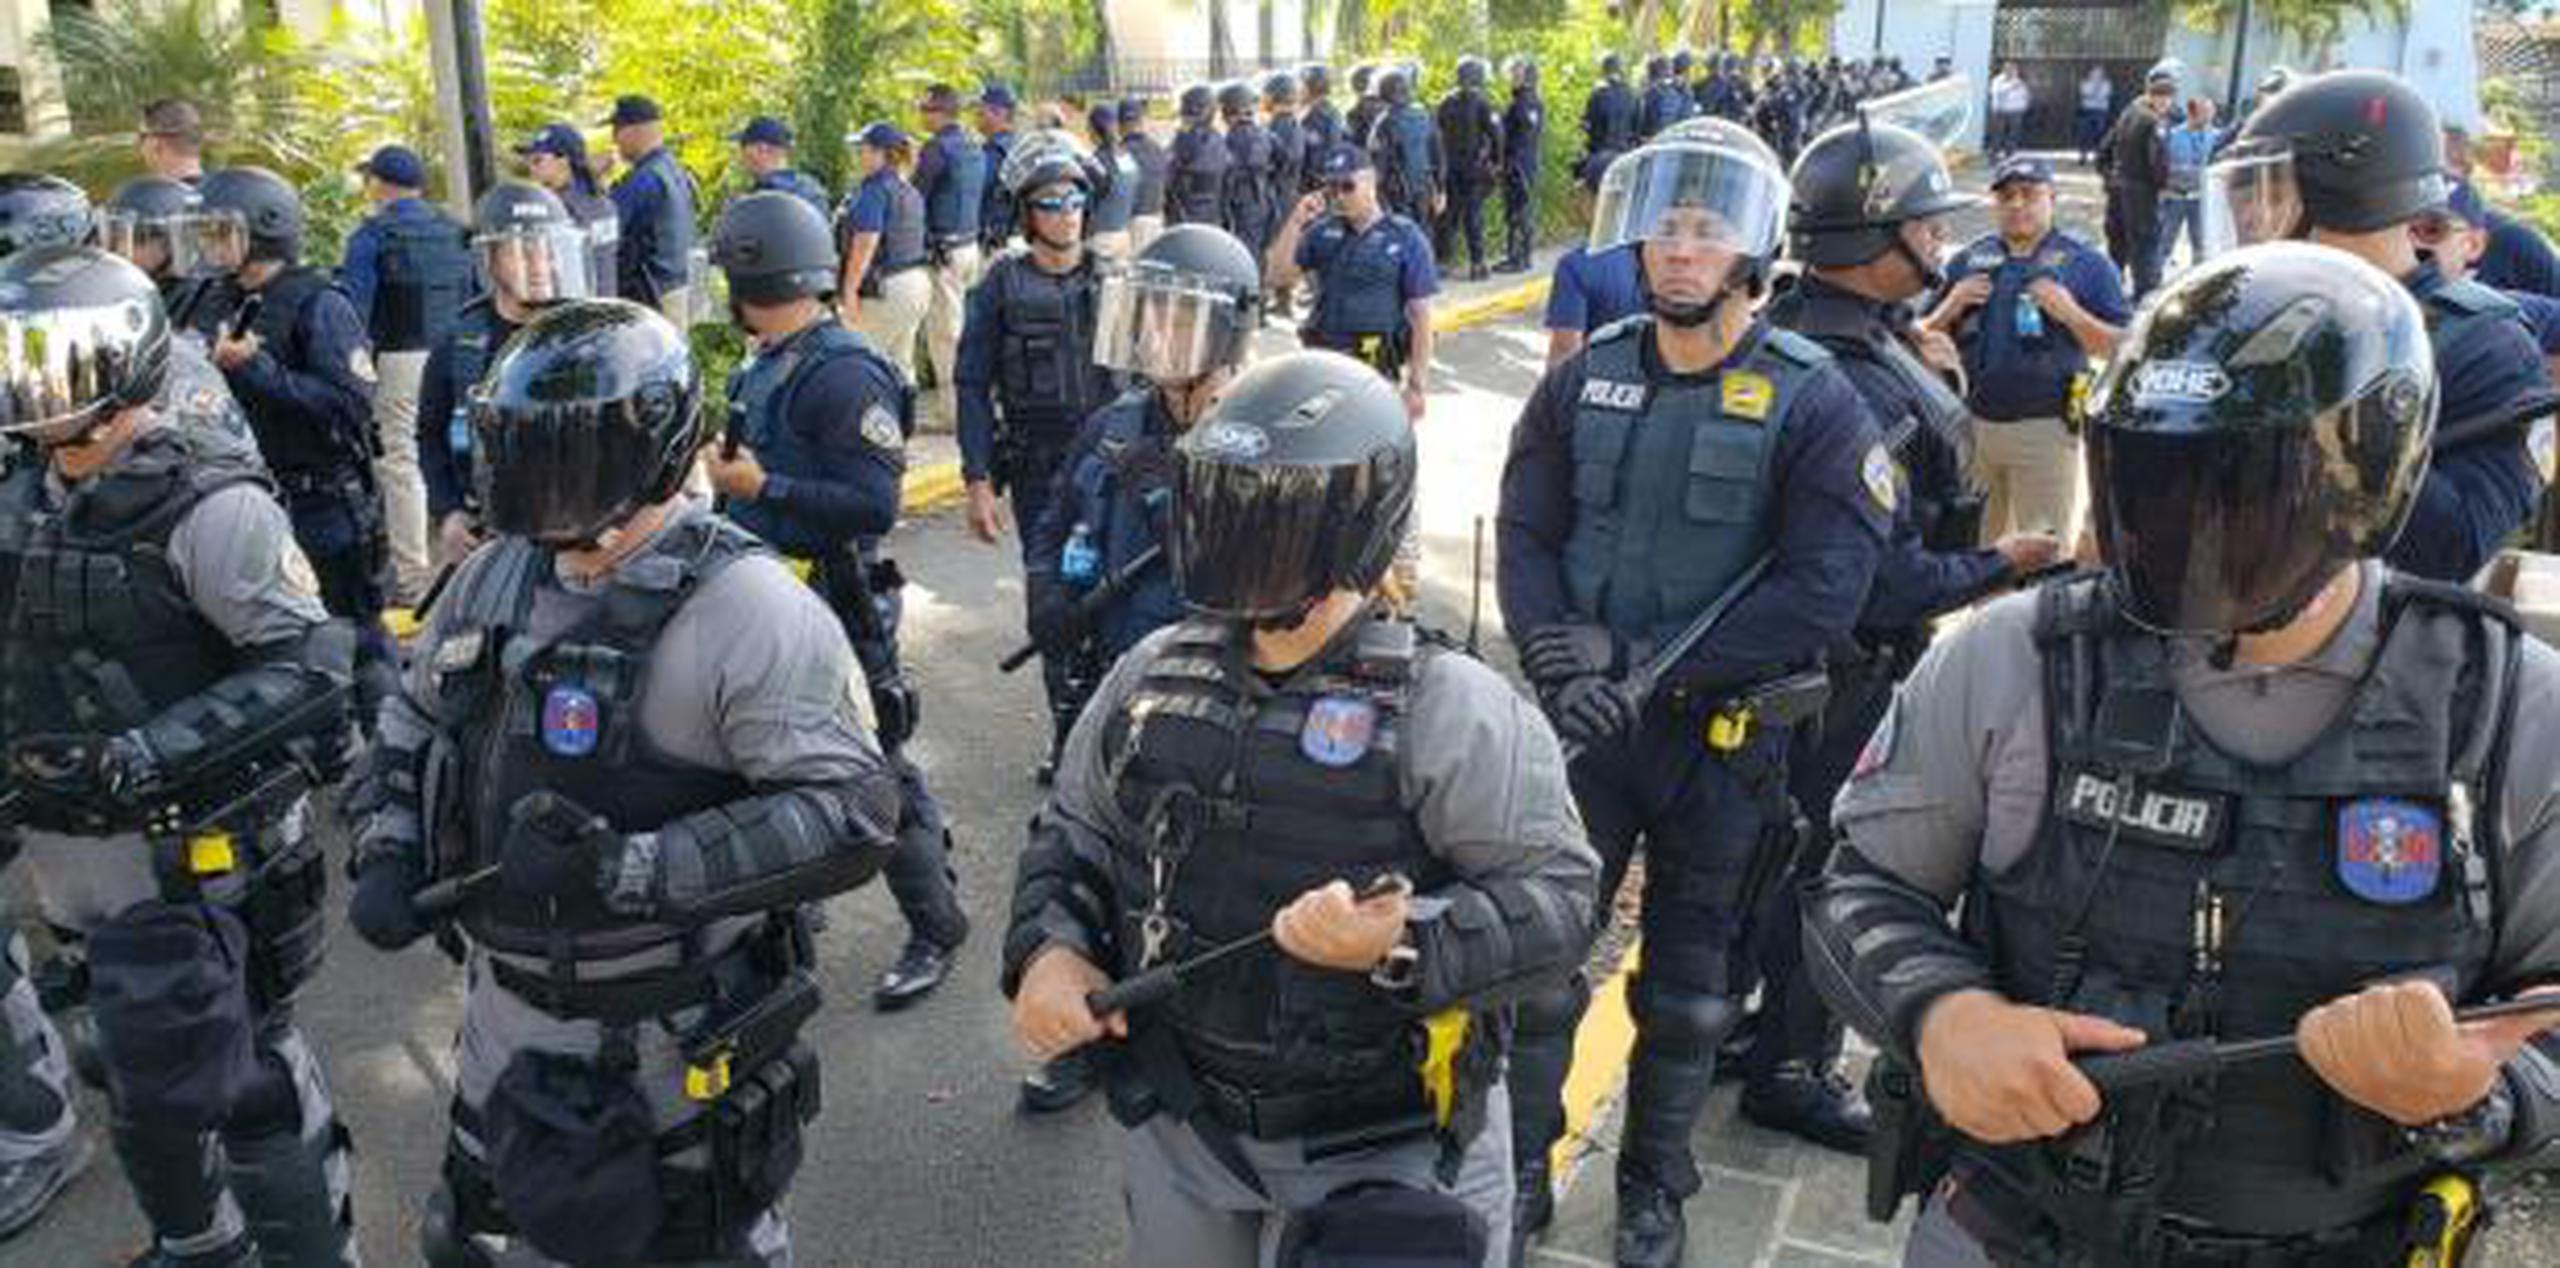 La situación provocó la movilización de agentes de Operaciones Tácticas y la unidad motorizada del Negociado de la Policía de Puerto Rico. (xavier.araujo@gfrmedia.com)